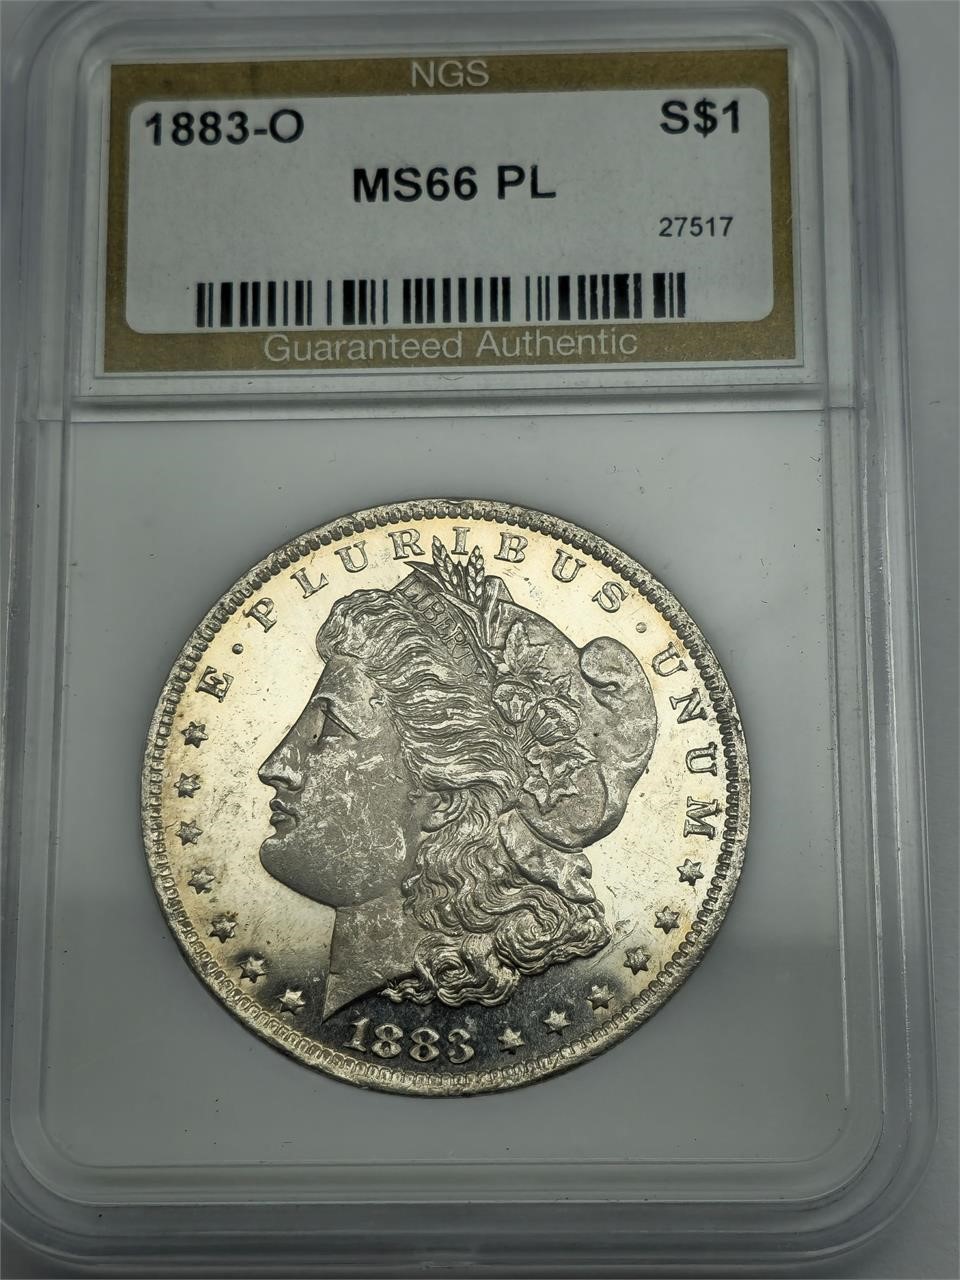 1883-O MS66 PL Silver Morgan Dollar NGS graded